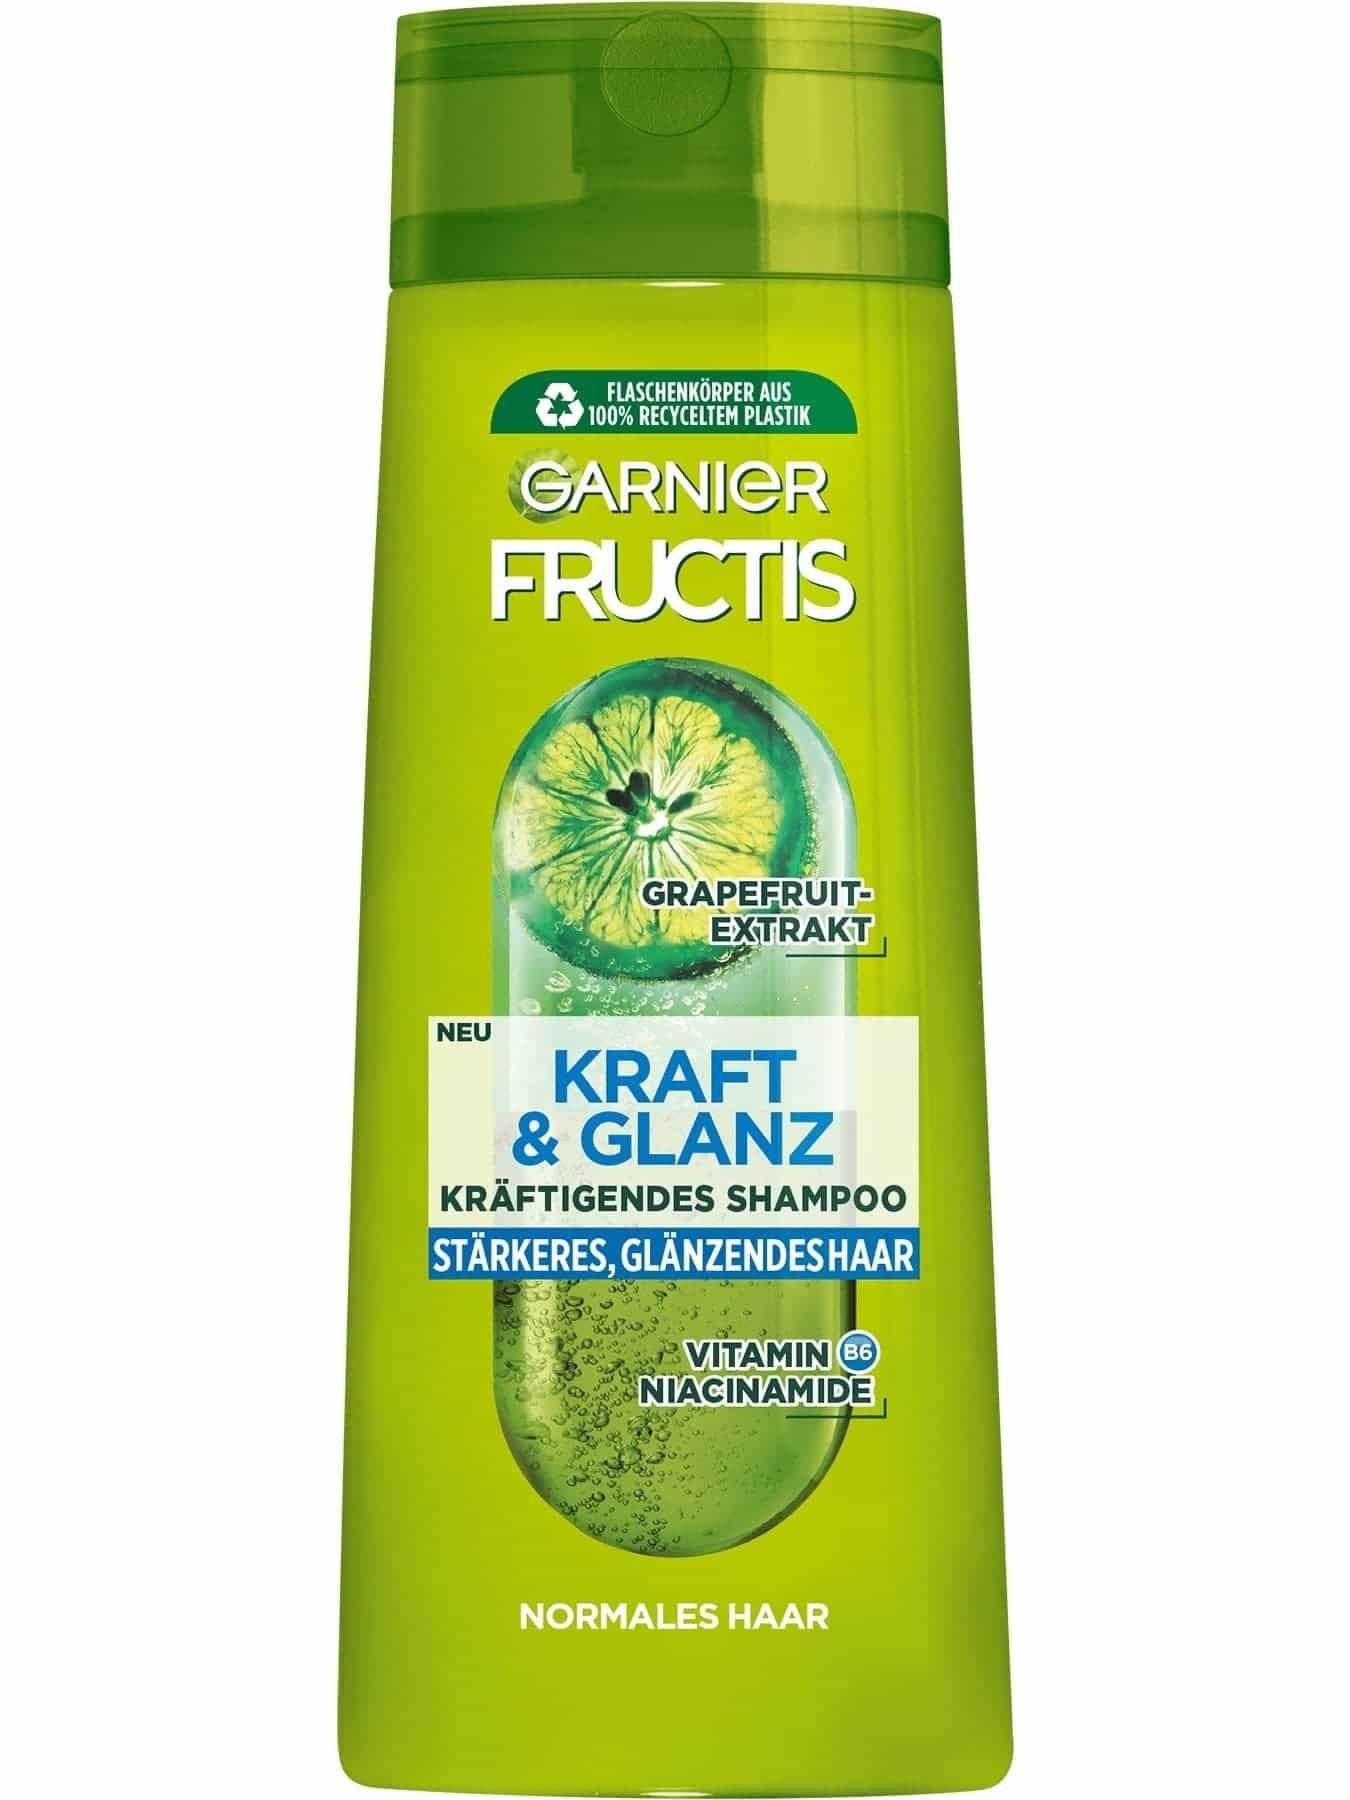 Kraft und Glanz – Kräftigendes Garnier Shampoo